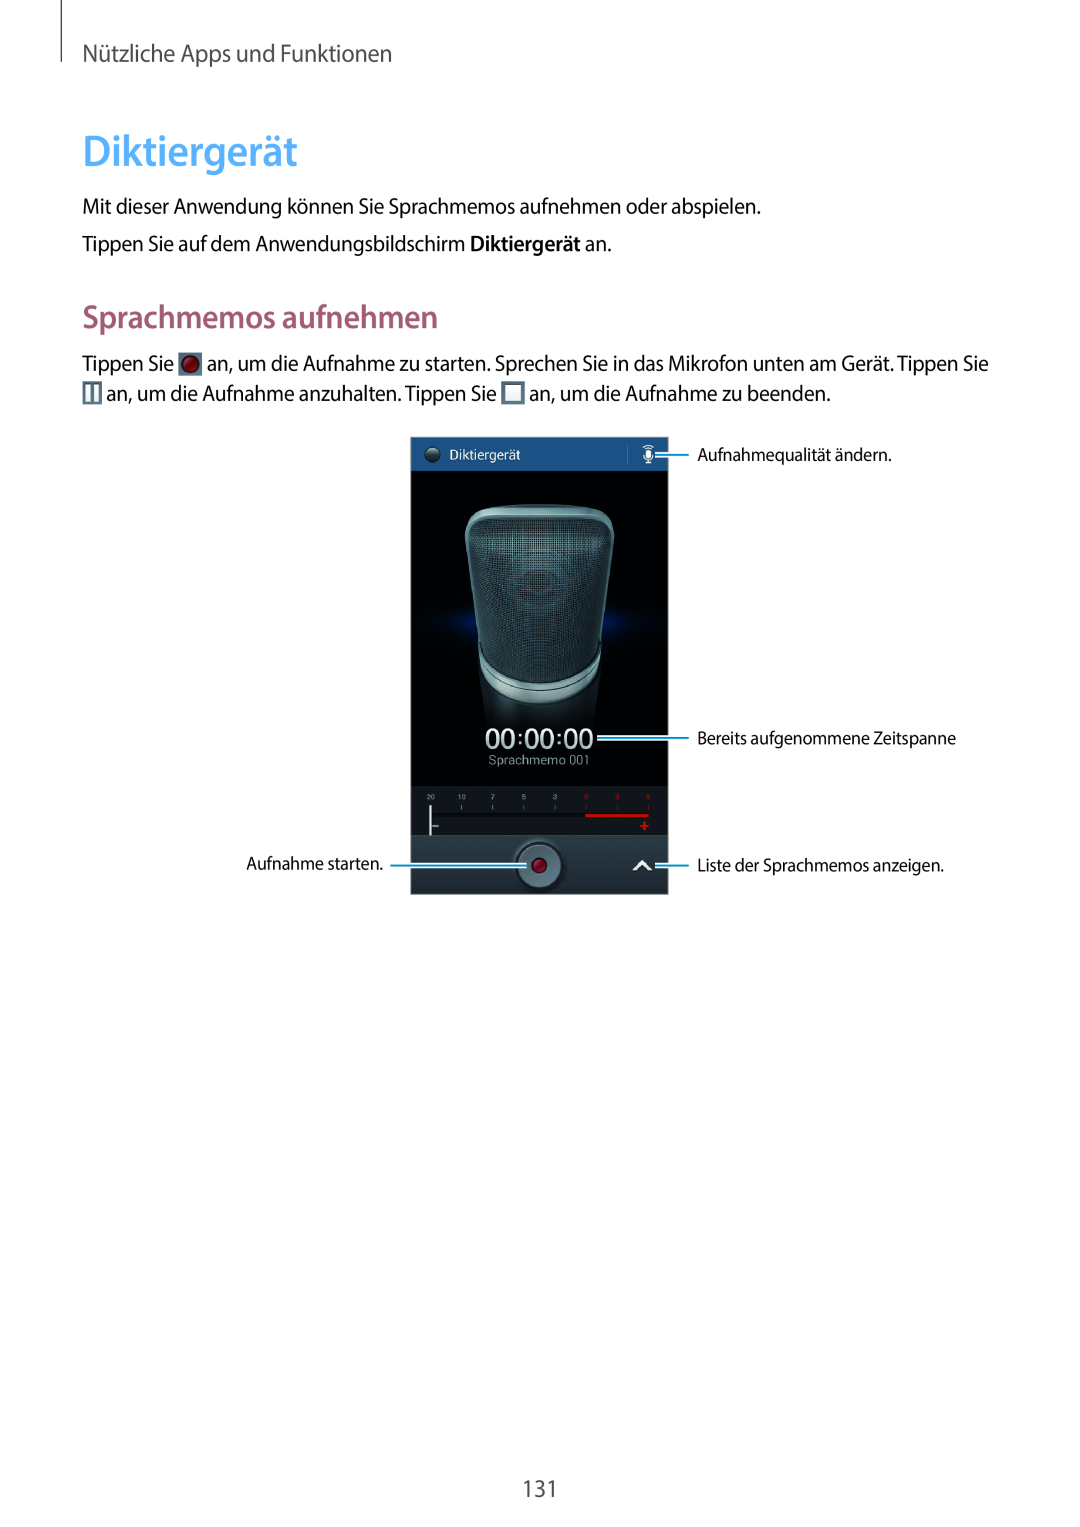 Samsung SM-C1010ZKATUR manual Diktiergerät, Sprachmemos aufnehmen, Nützliche Apps und Funktionen, Aufnahme starten 